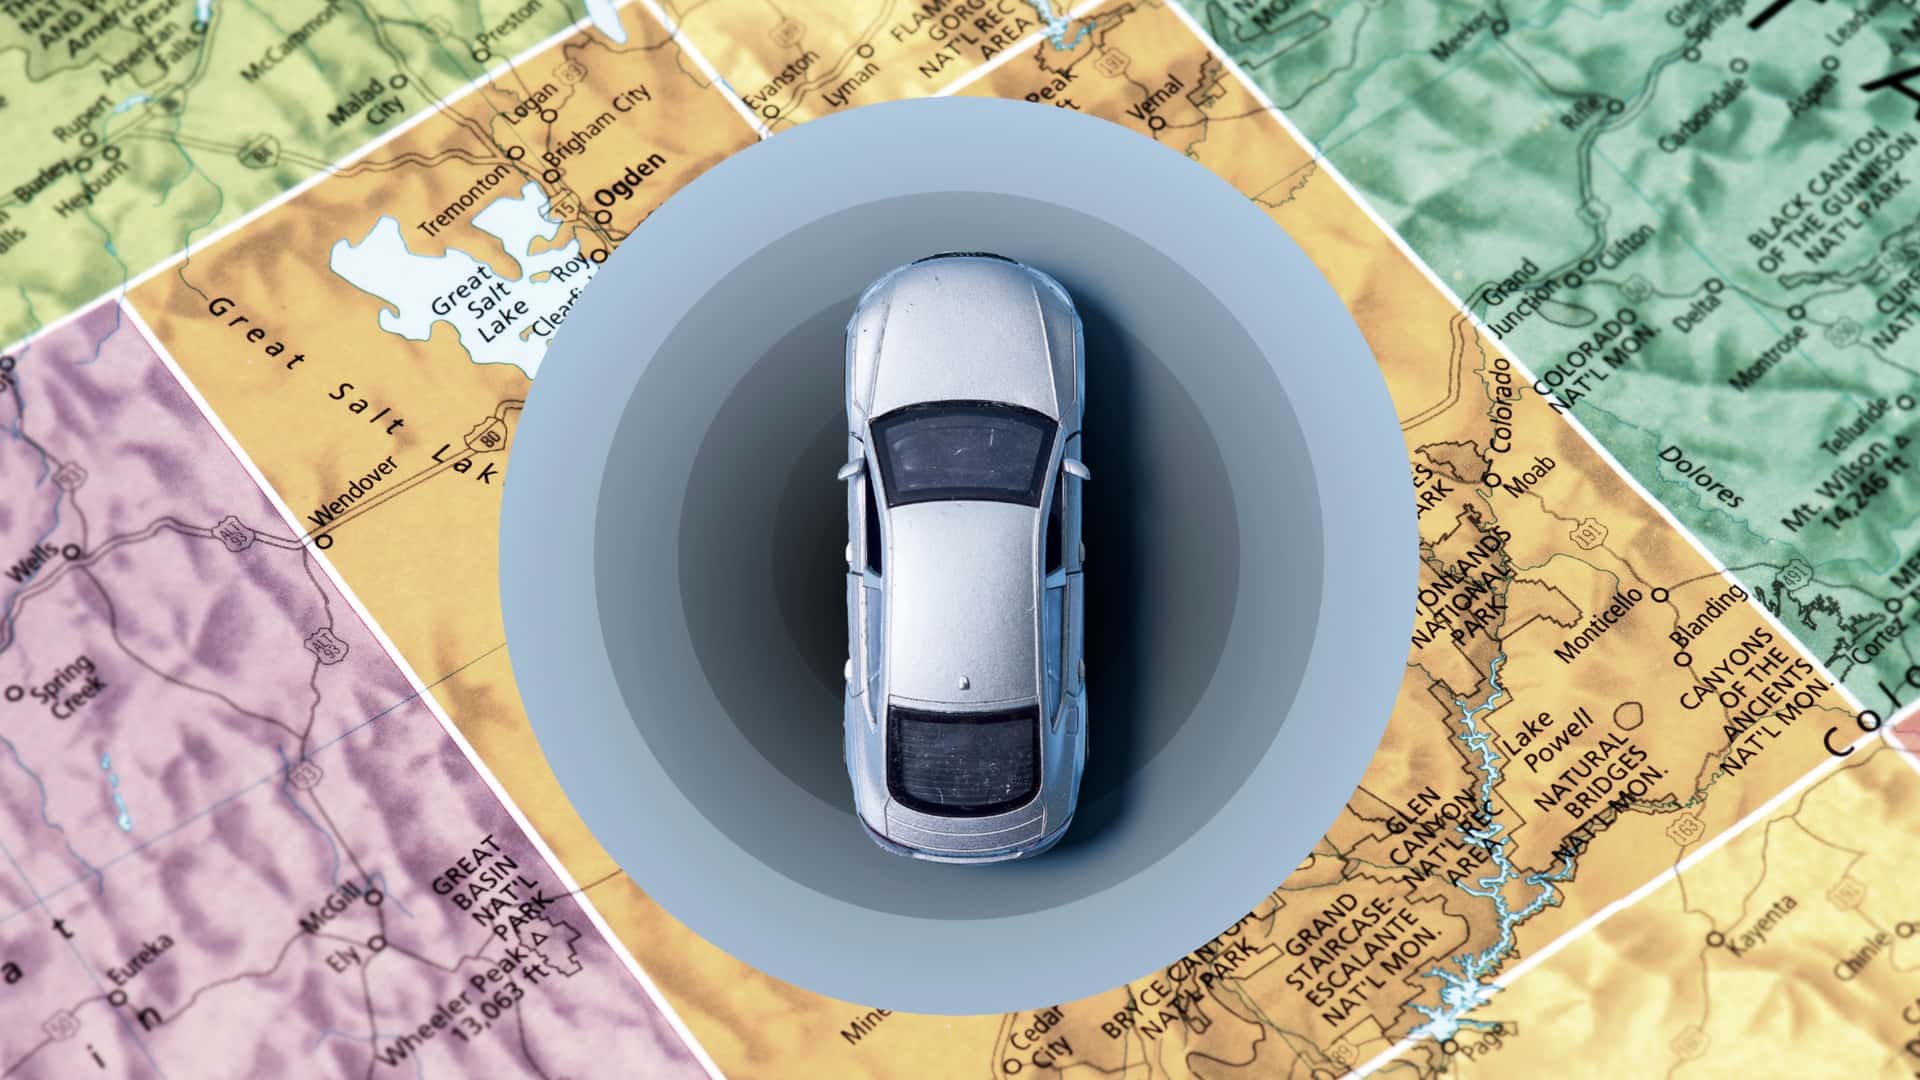 يقوم برنامج Utah Pilot بتثبيت نظام تحديد المواقع العالمي (GPS) لتتبع السيارات من أجل ضريبة استخدام الطرق ورسوم المرور